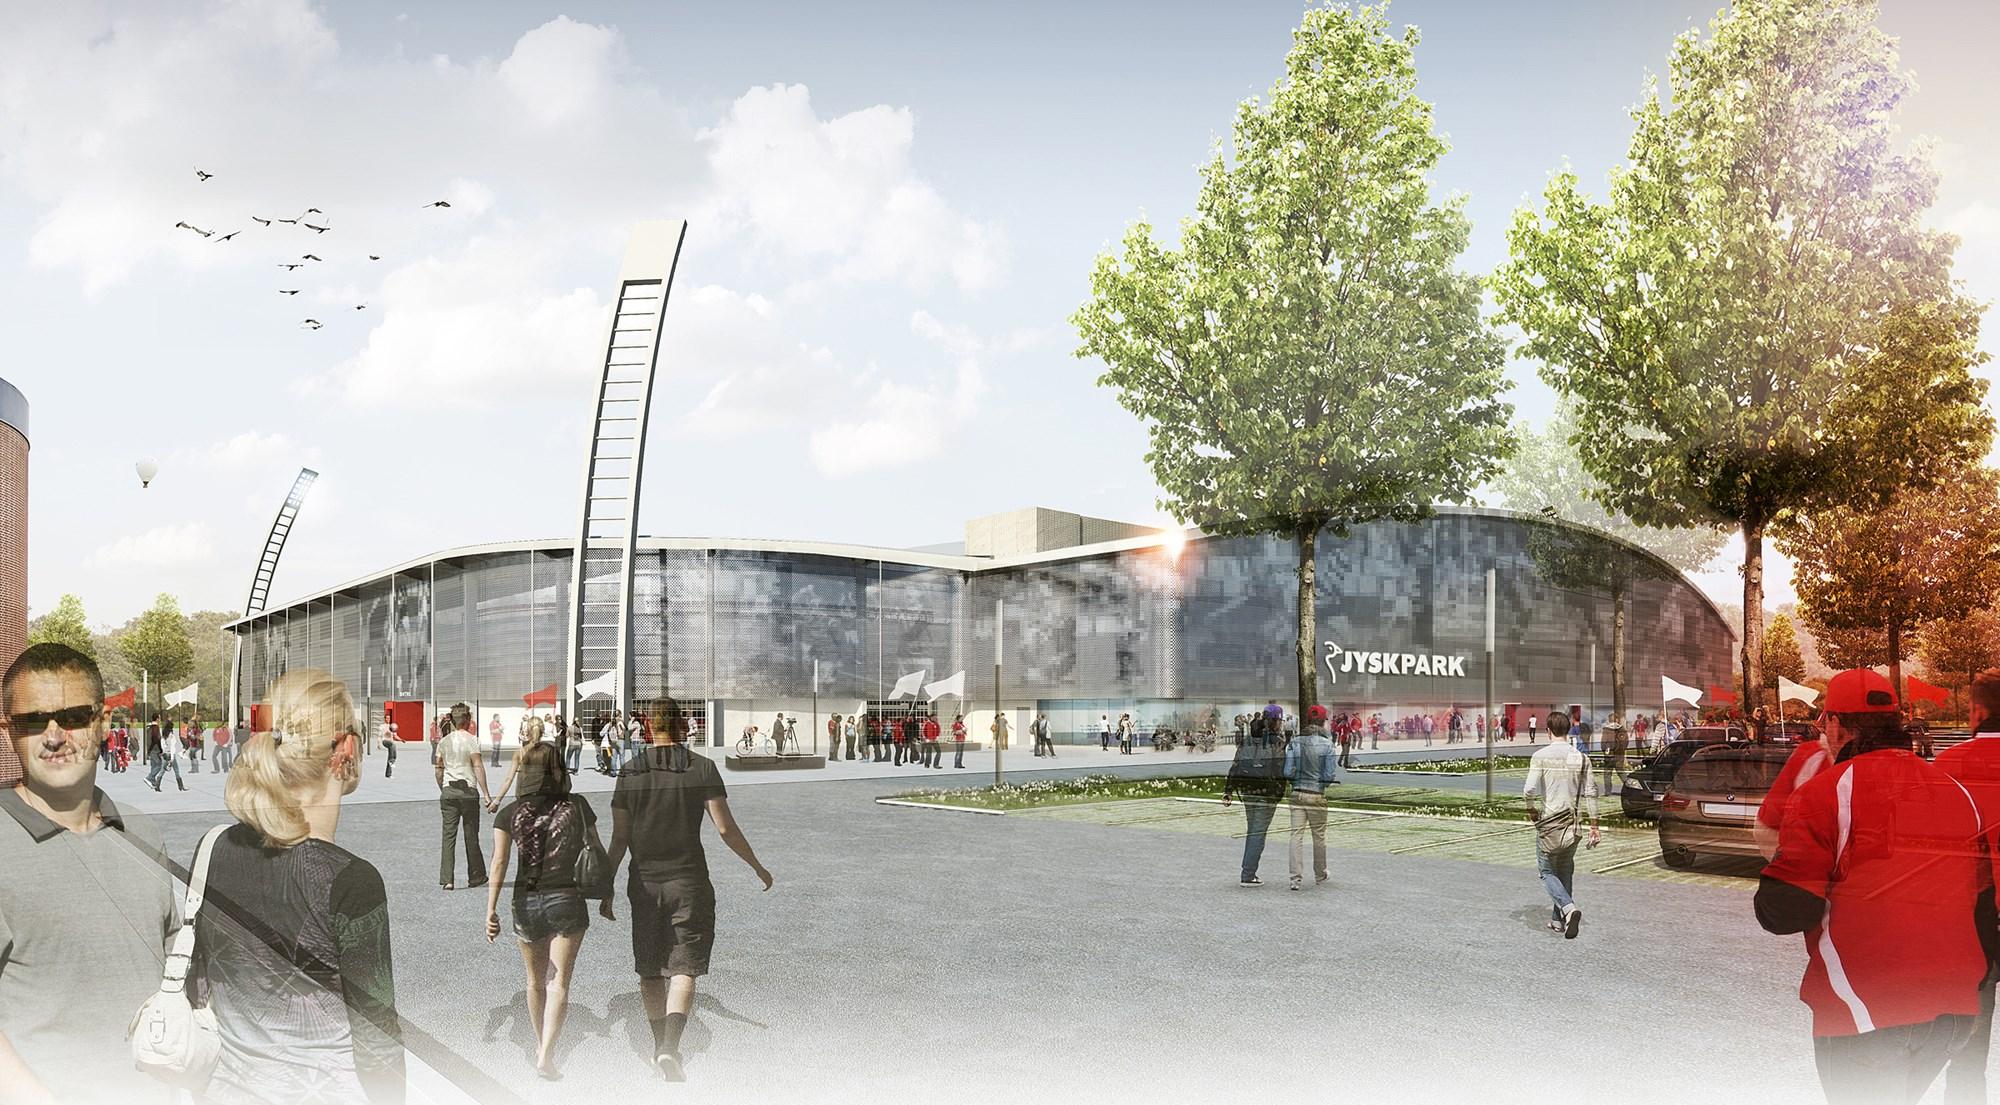 Det nye stadion i Silkeborg JYSK Park bliver ifølge borgmester Steen Vindum det mest moderne i Danmark. Det forventes at stå klar til superligabold i 2016. Ti millioner kroner af finansieringen kommer fra JYSK-koncernen, der har betalt for stadionnavnet. 
Foto: presse